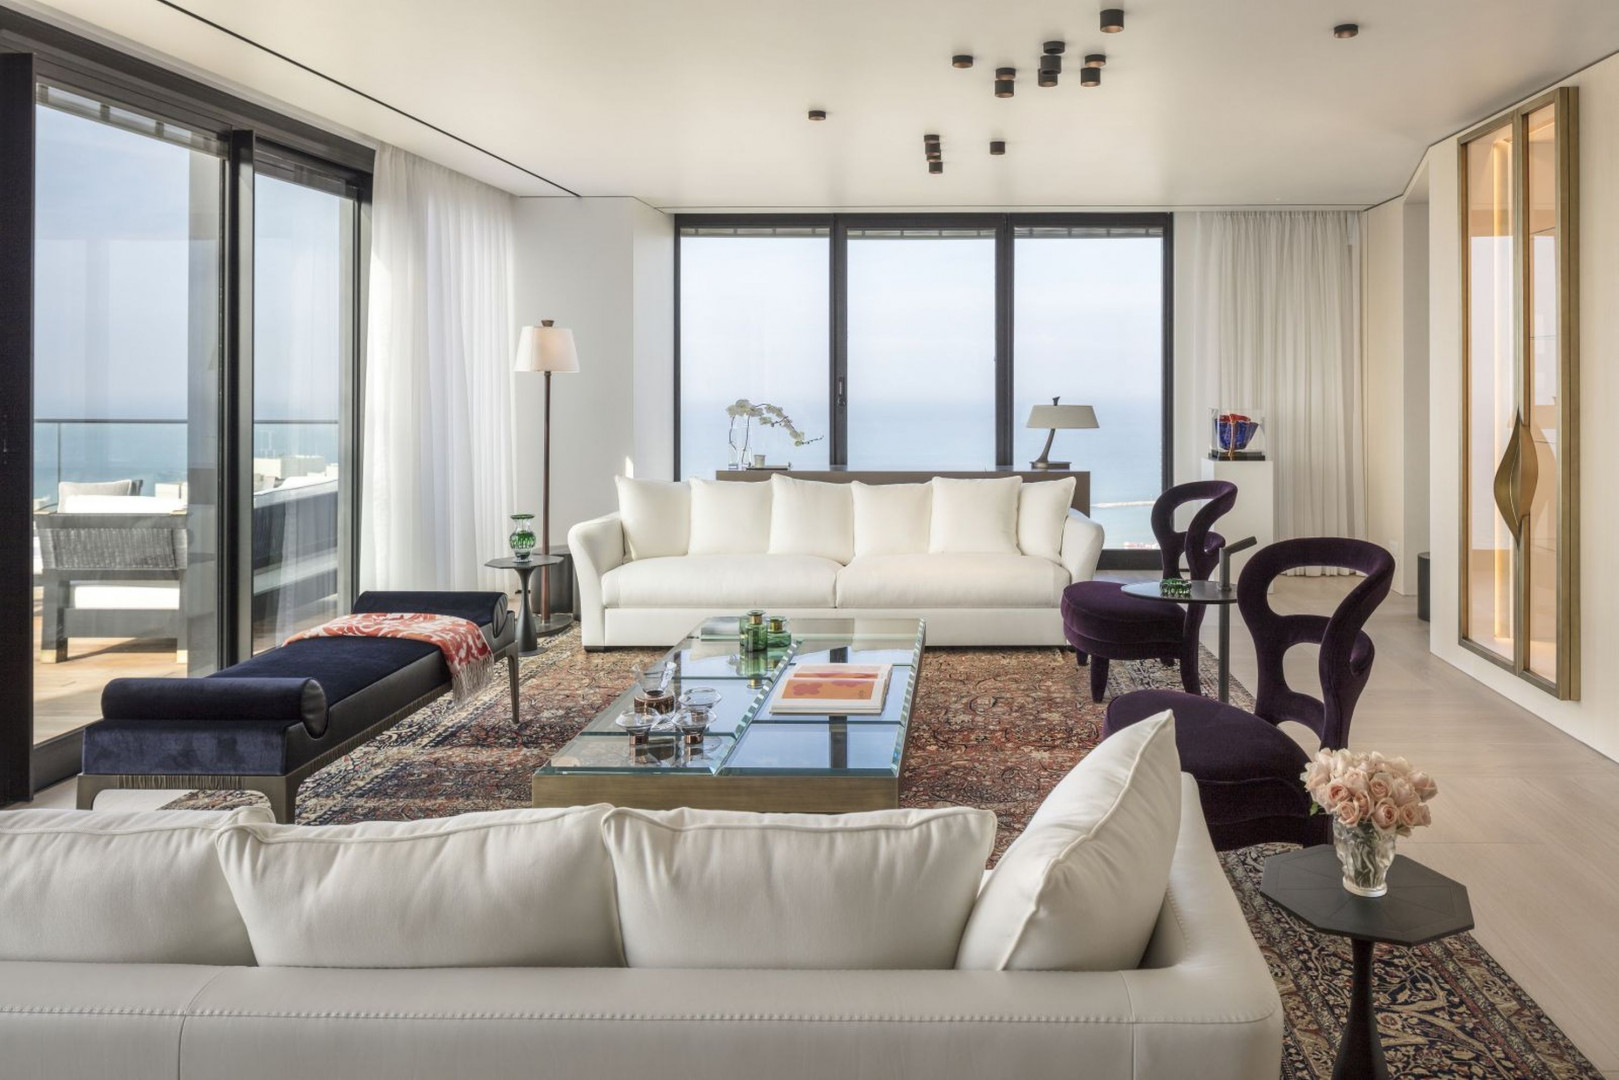 Luksusowa rezydencja w Tel Awiwie. Projekt Irma Orenstein 